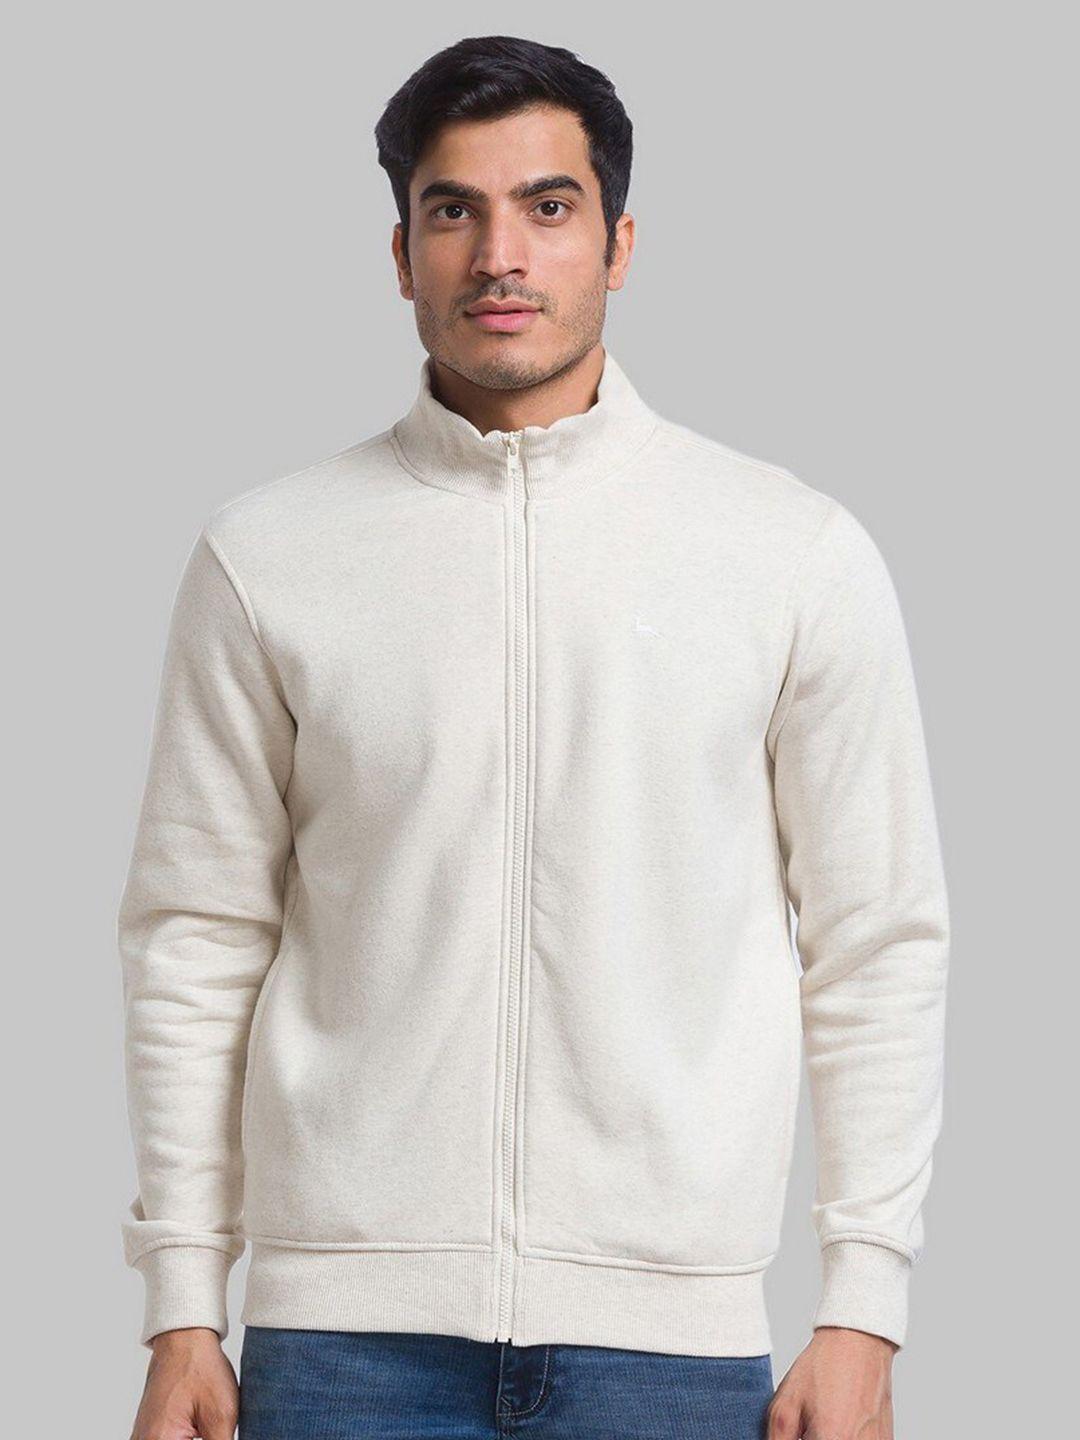 parx-men-regular-fit-white-sweatshirt